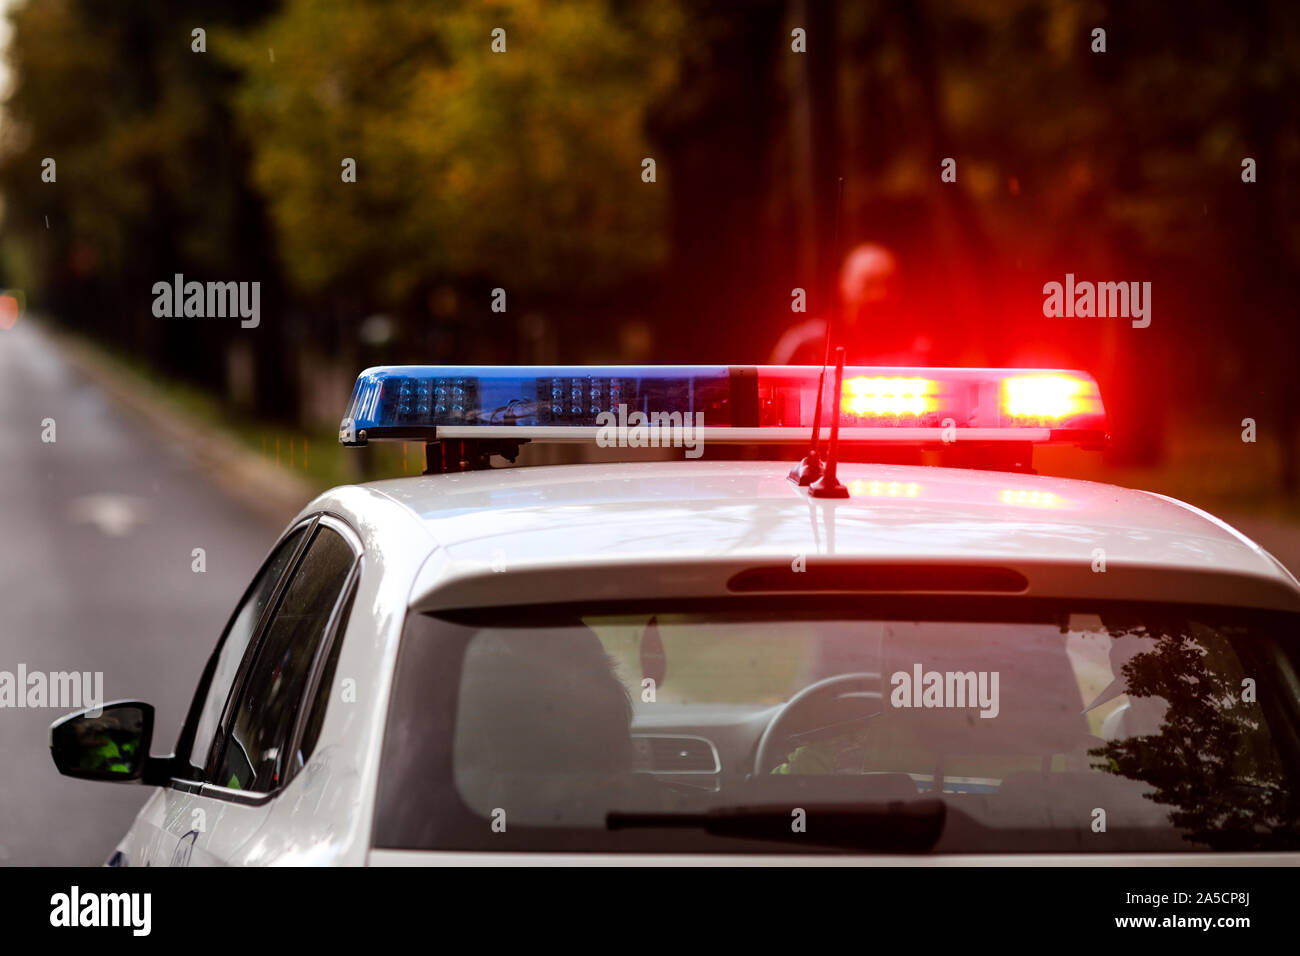 Details mit den roten und blauen Lichtern Sirene auf einem Polizei Auto  Stockfotografie - Alamy